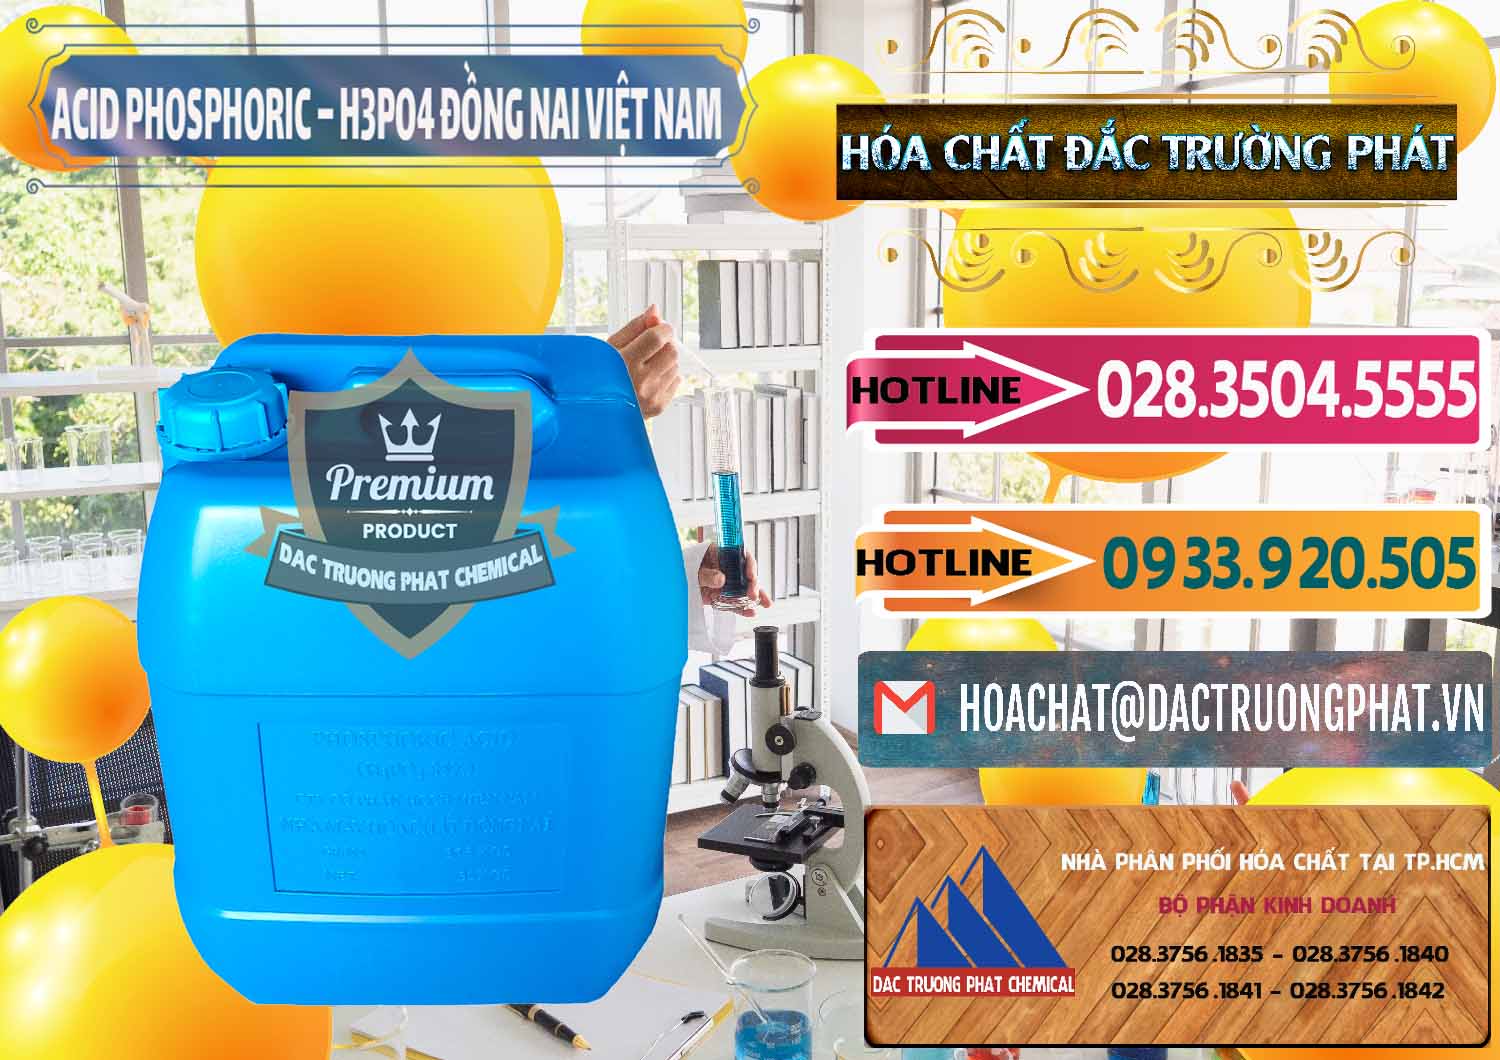 Nơi chuyên kinh doanh ( phân phối ) Acid Phosphoric – Axit Phosphoric 85% Đồng Nai Việt Nam - 0183 - Cty chuyên cung ứng & bán hóa chất tại TP.HCM - dactruongphat.vn